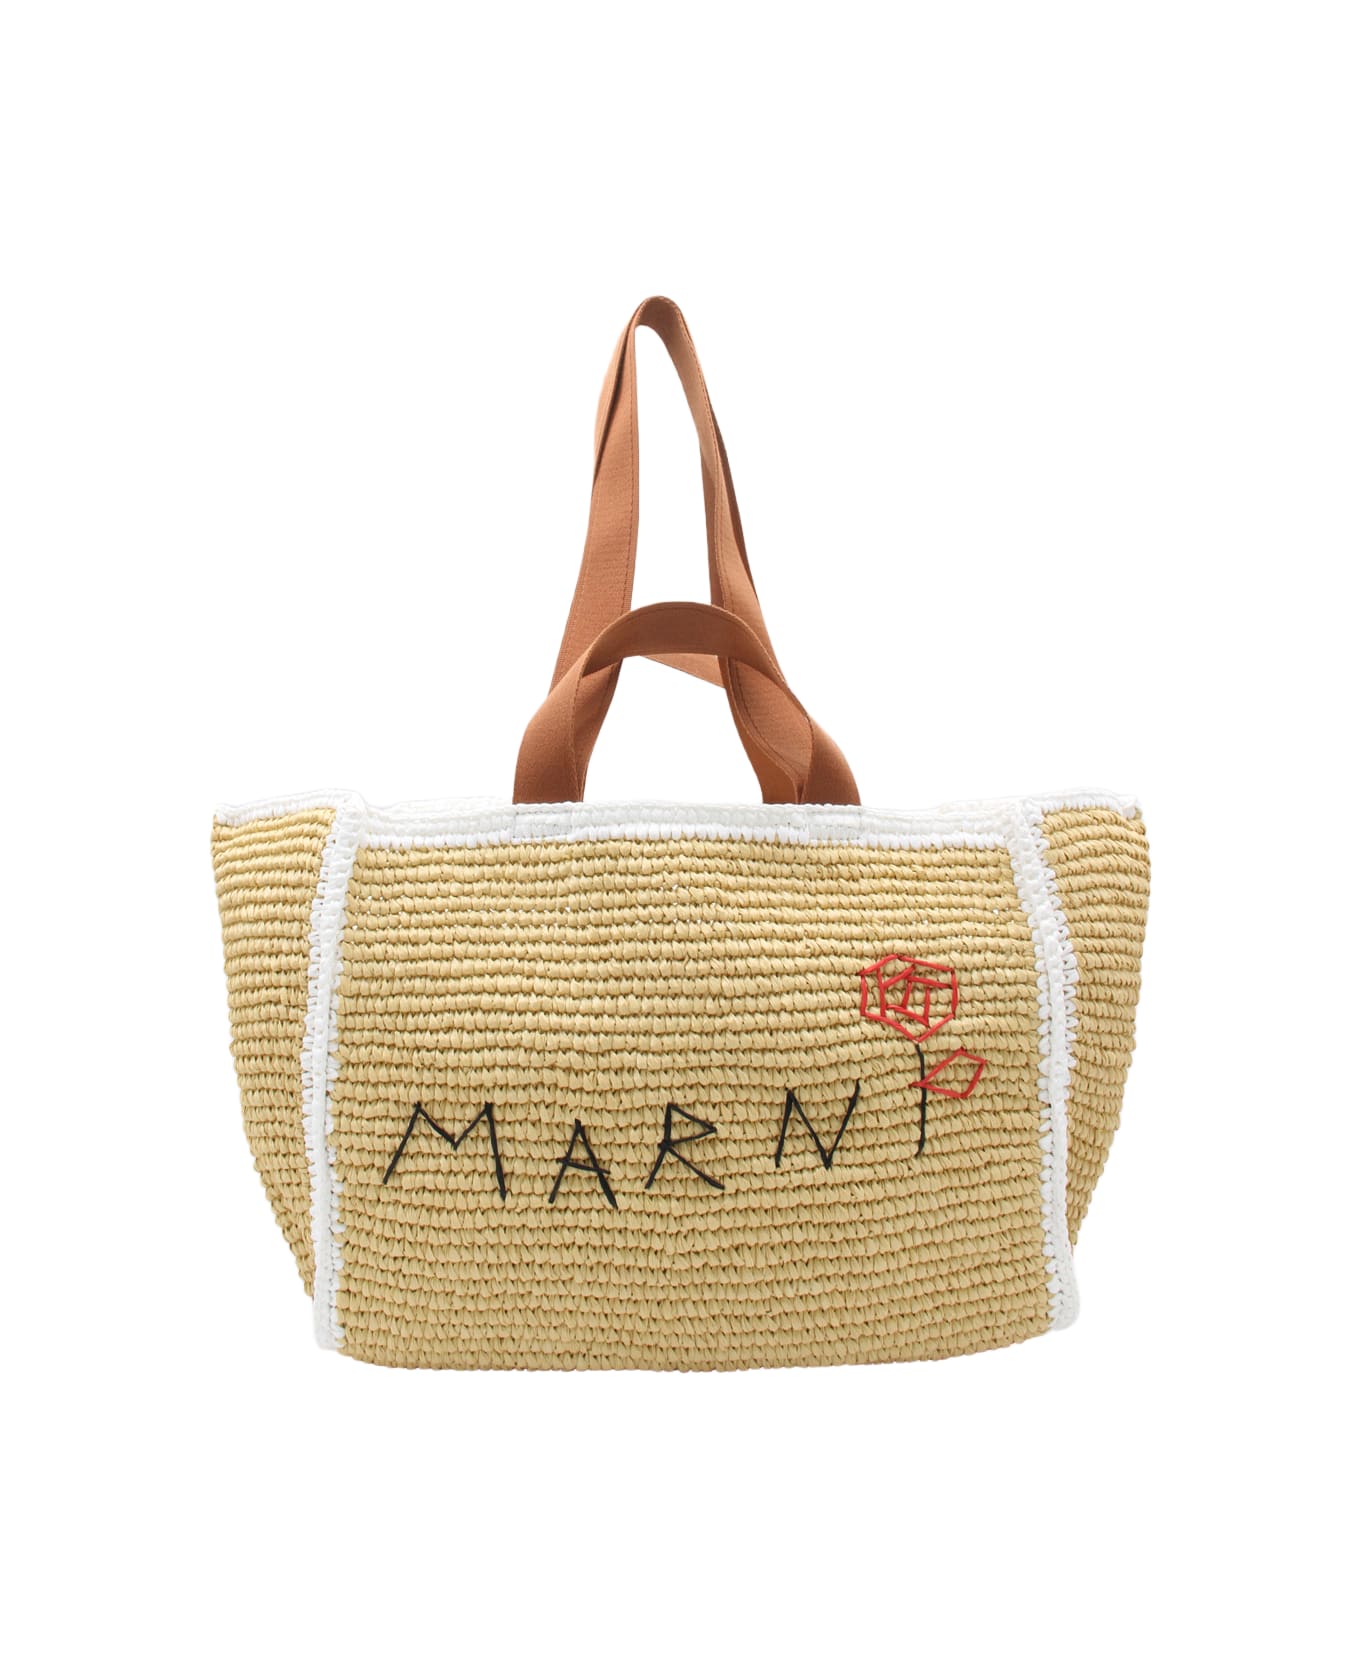 Marni Natural And White Raffia Tote Bag - NATUREL/WHITE/RUST